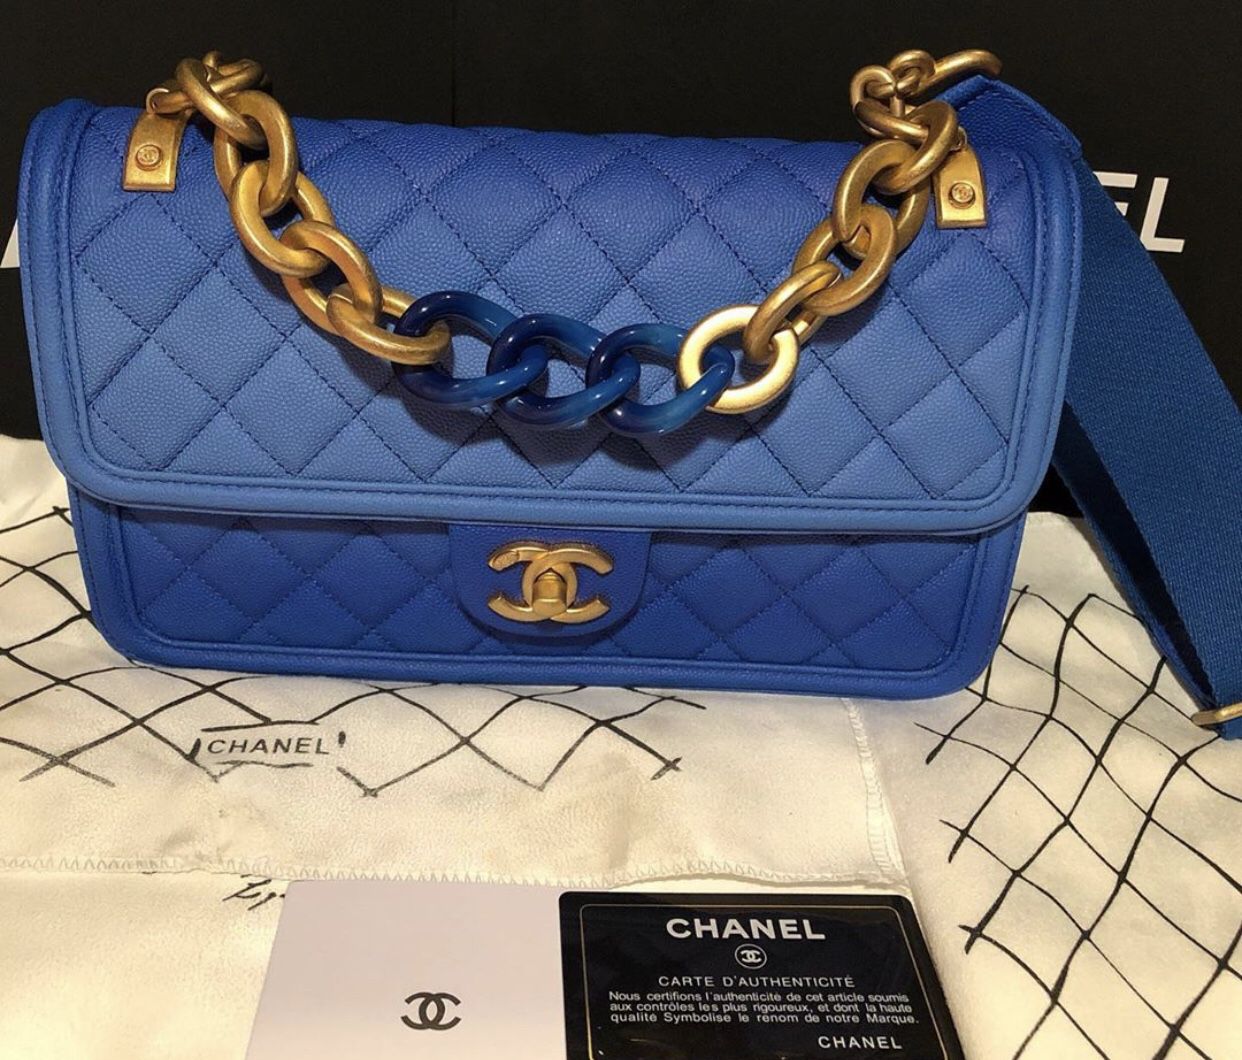 Authentic ocean blue Chanel purse